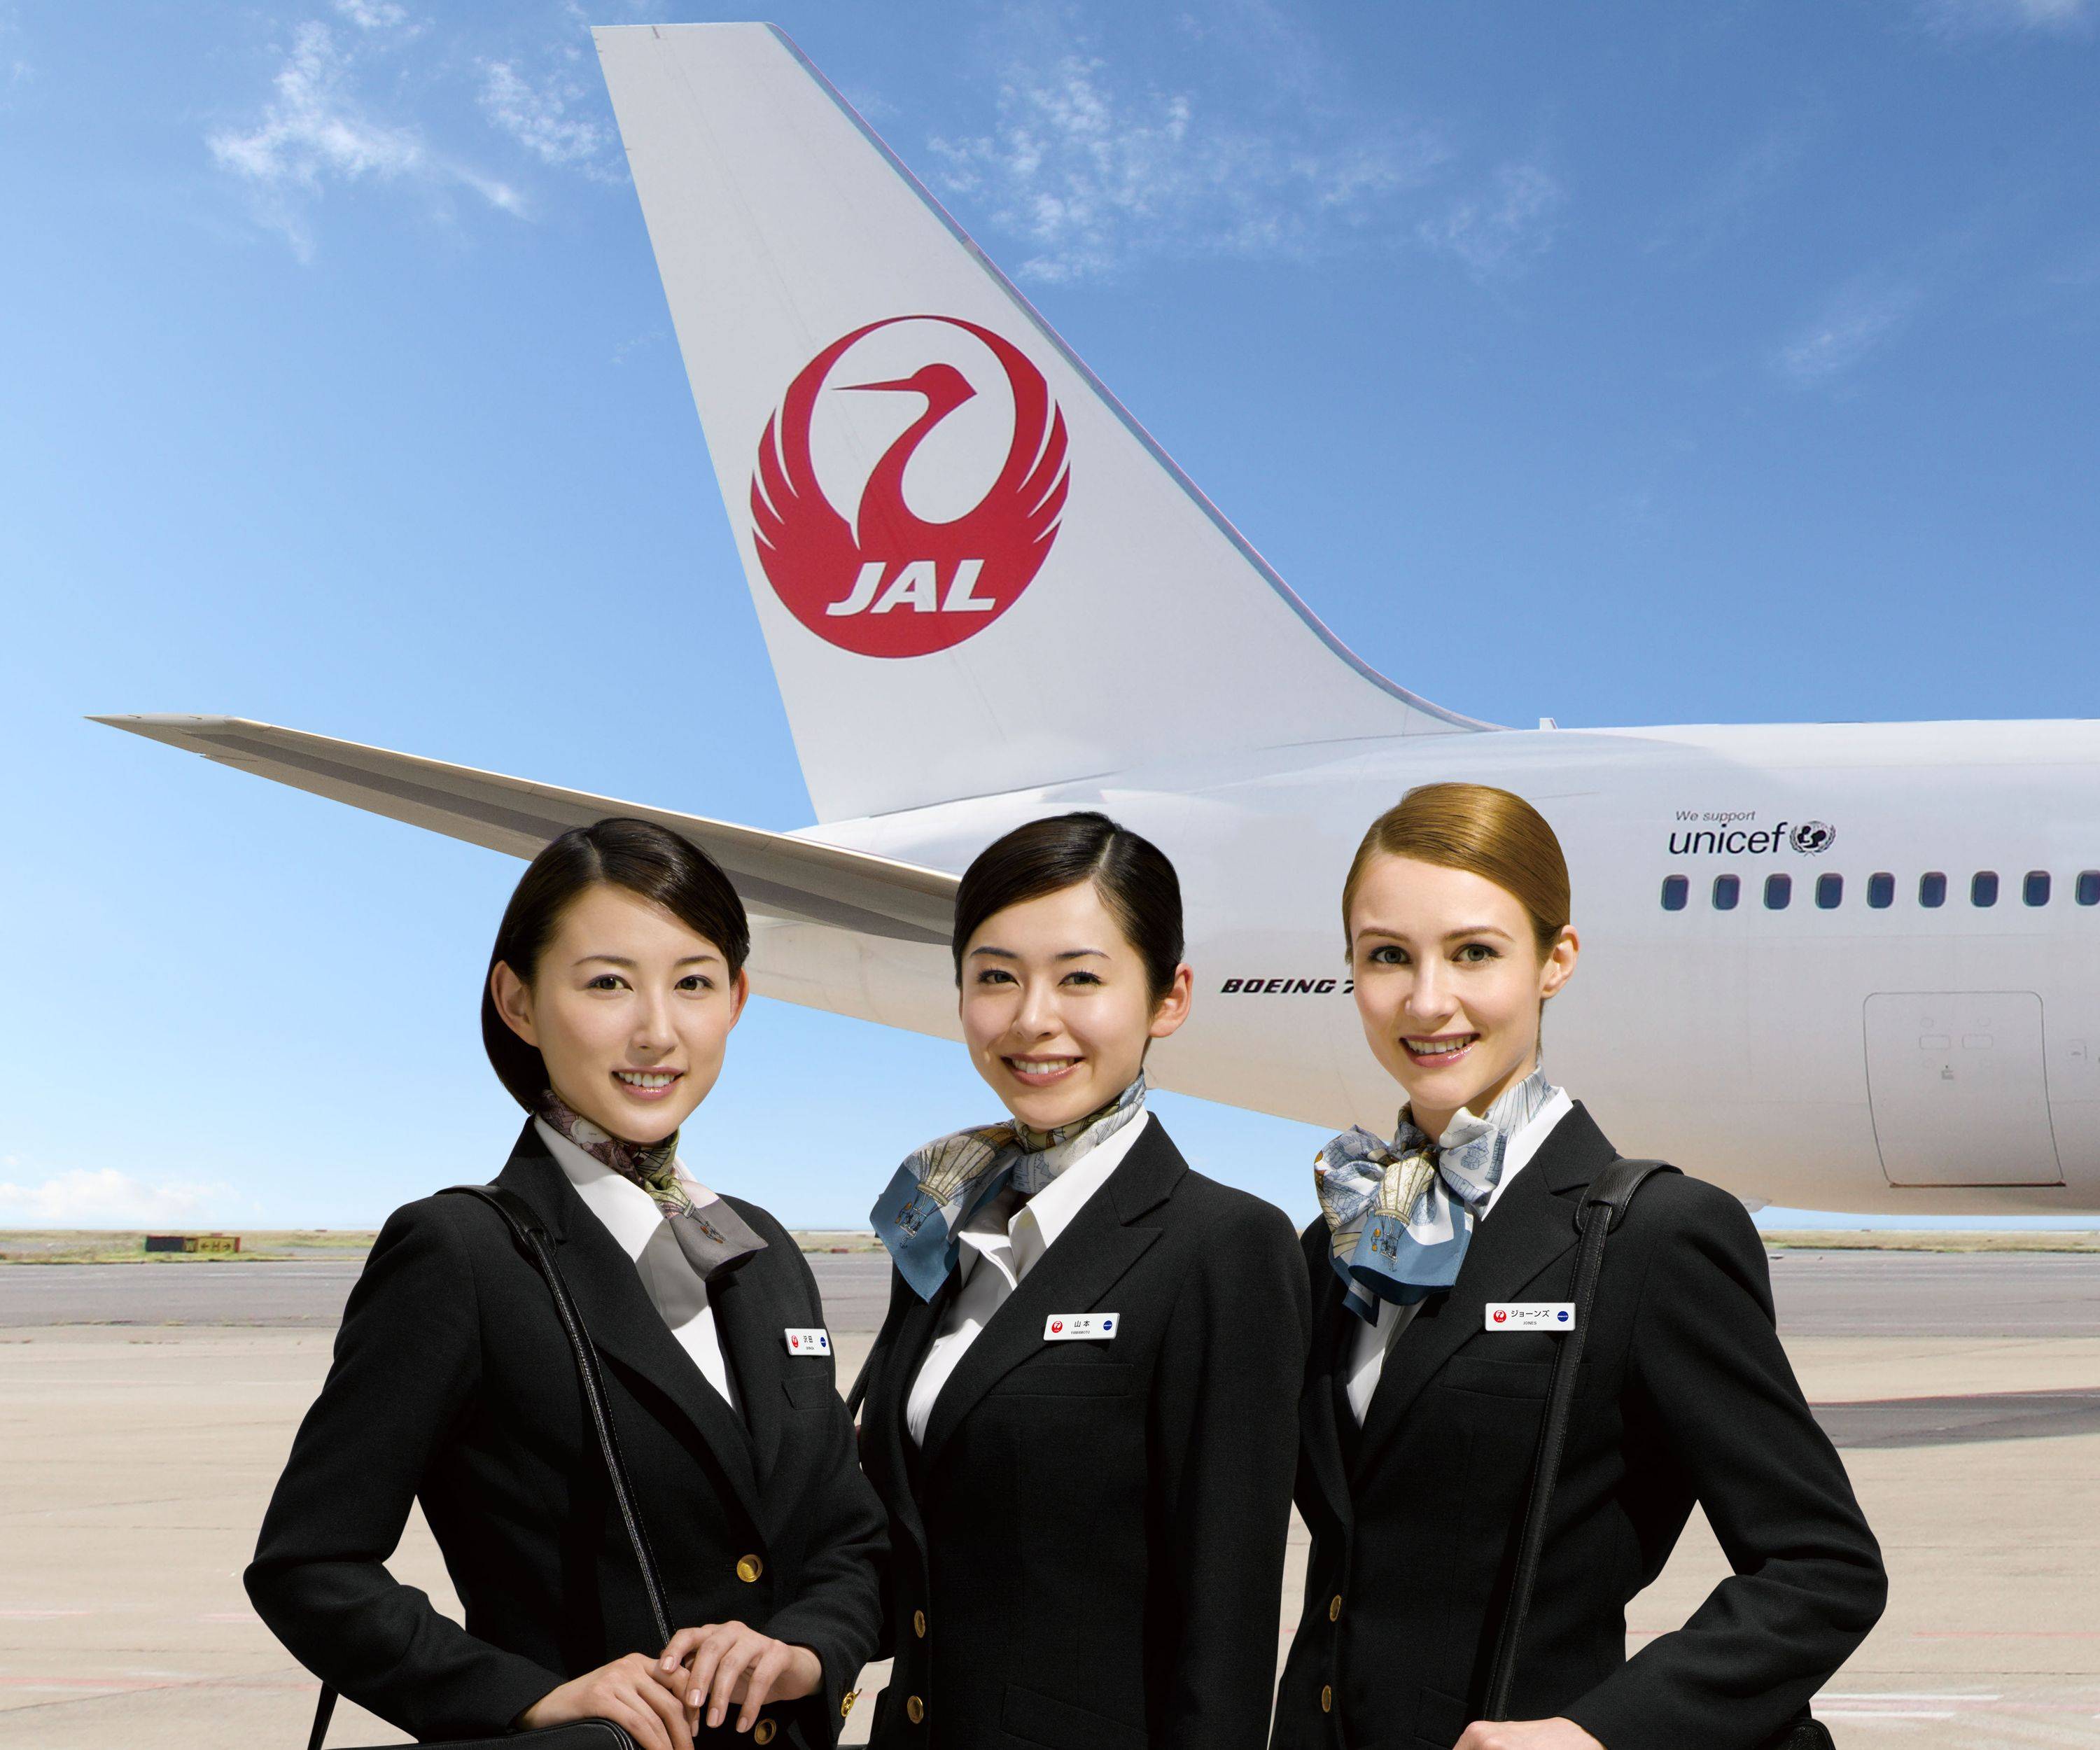 Японские авиалинии (japan airlines): официальный сайт на русском языке, онлайн регистрация на рейс